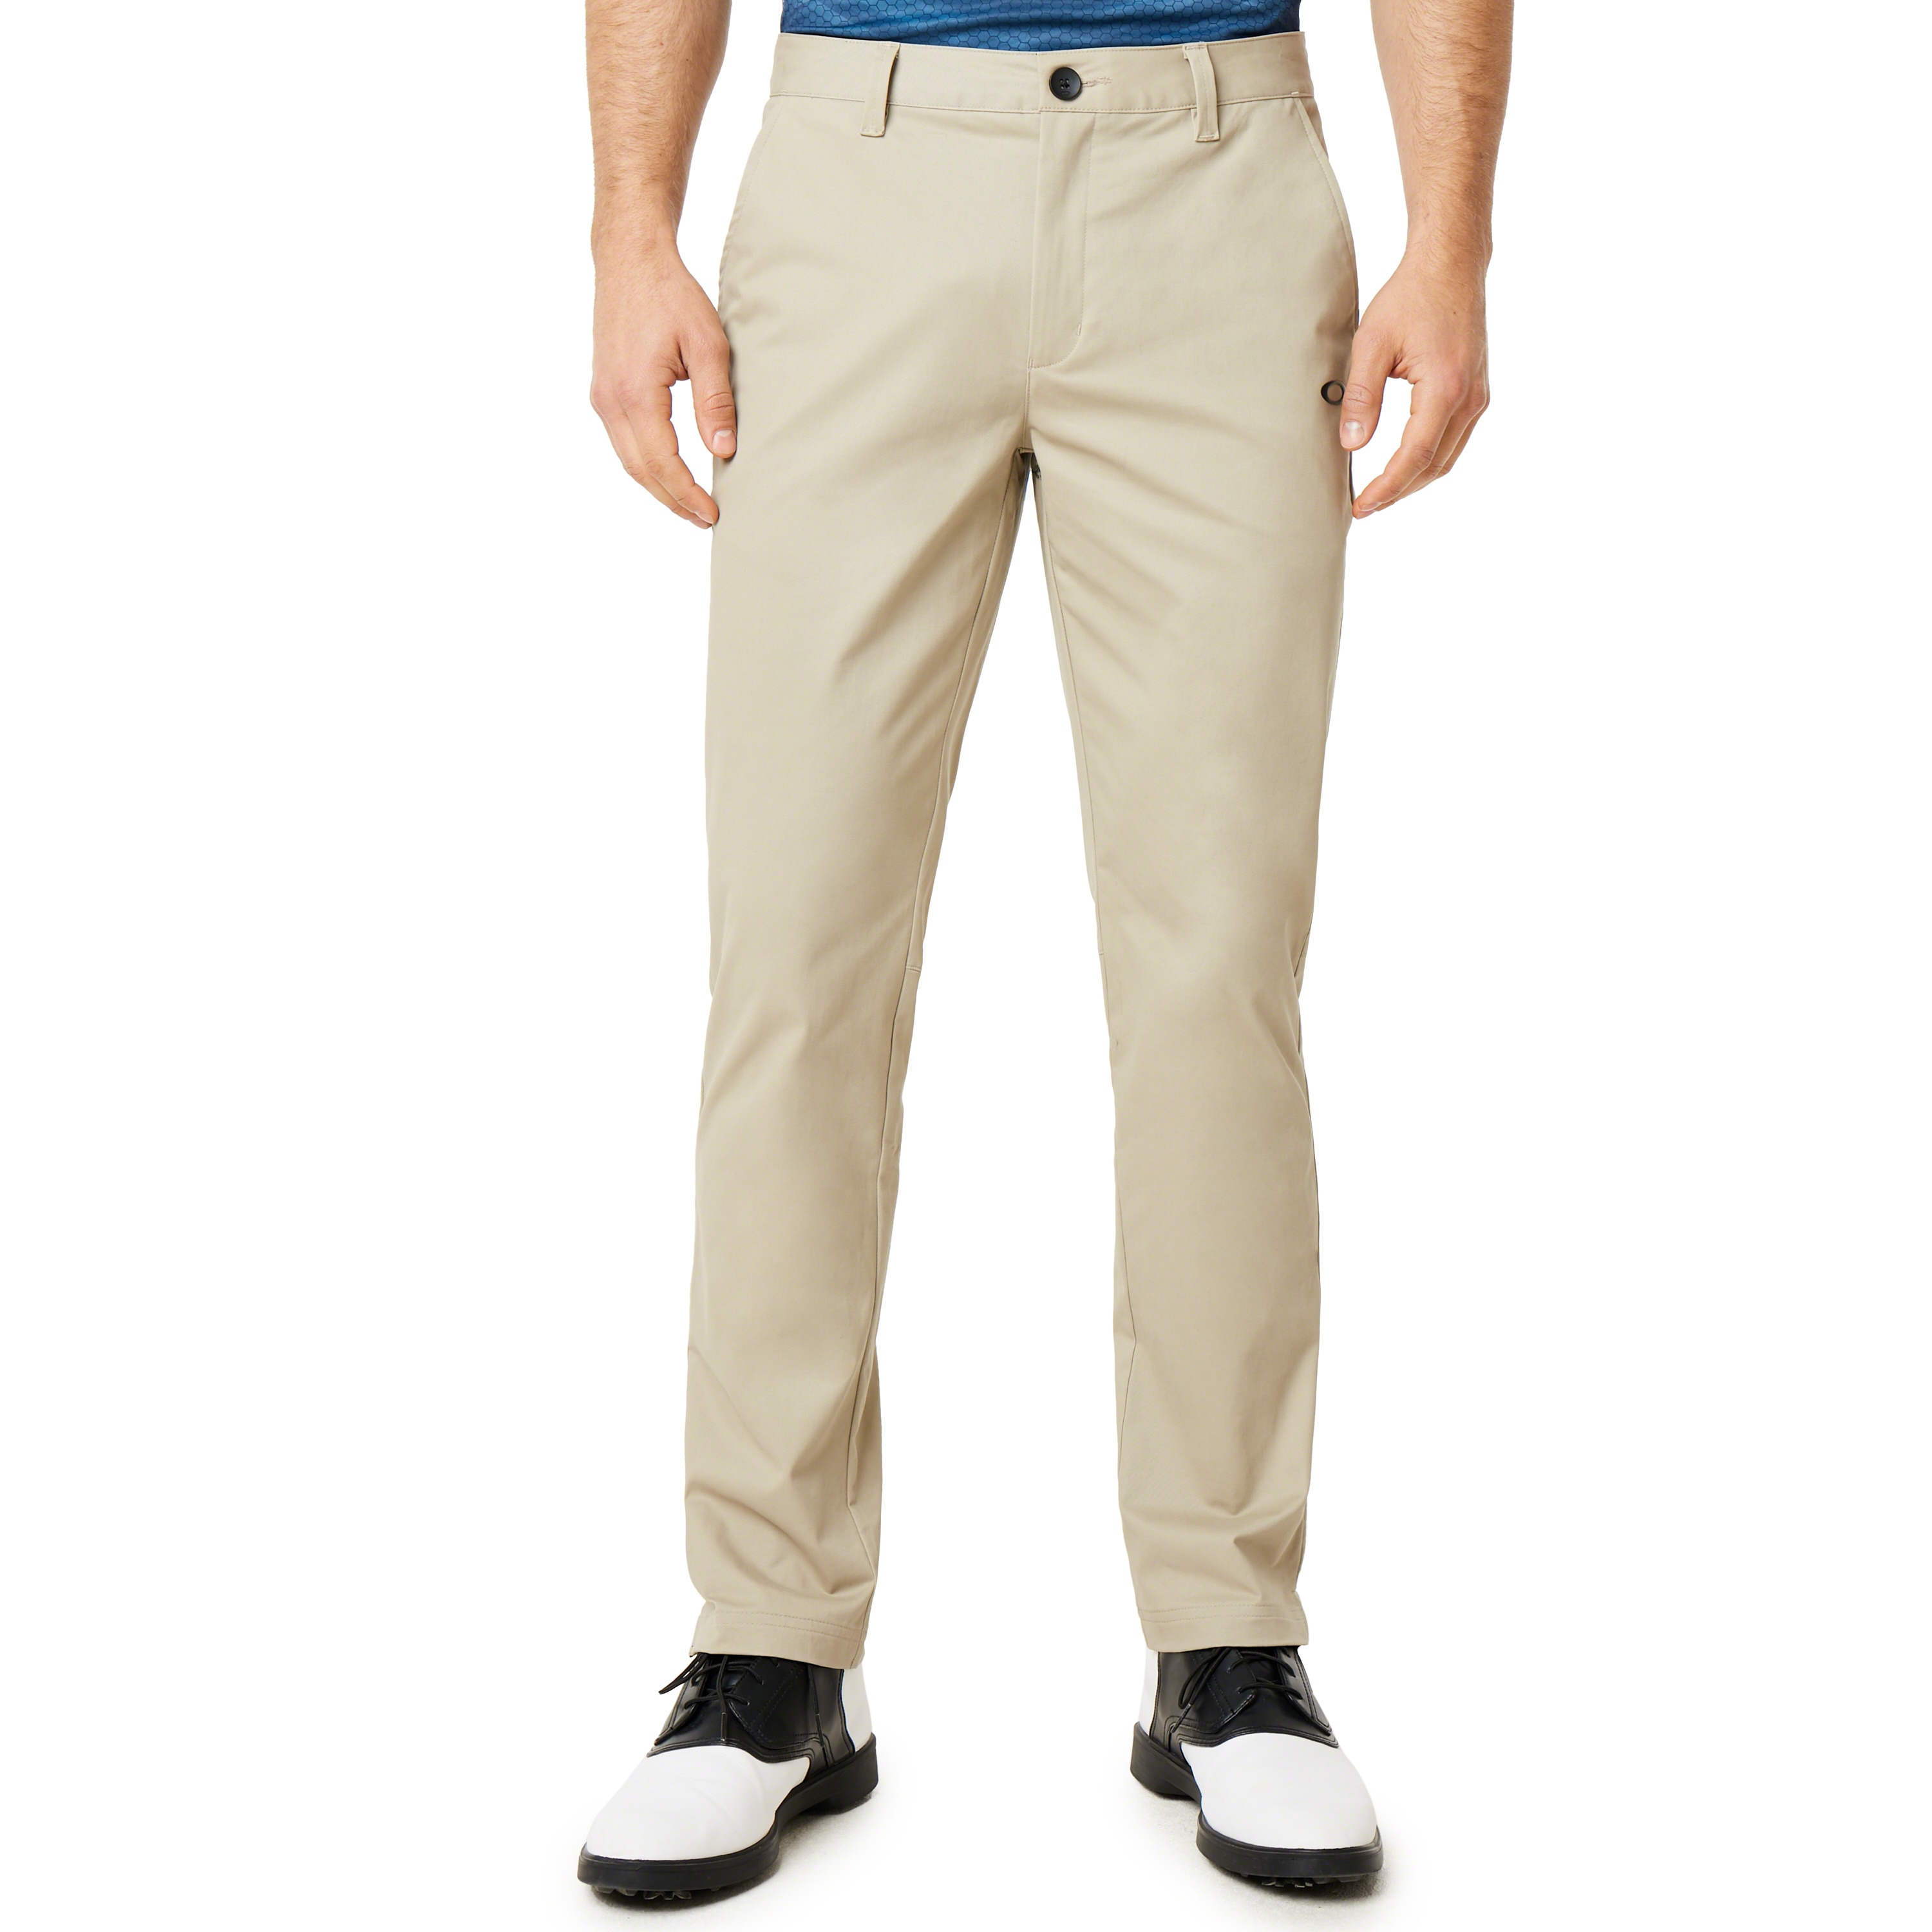 oakley golf pants sale